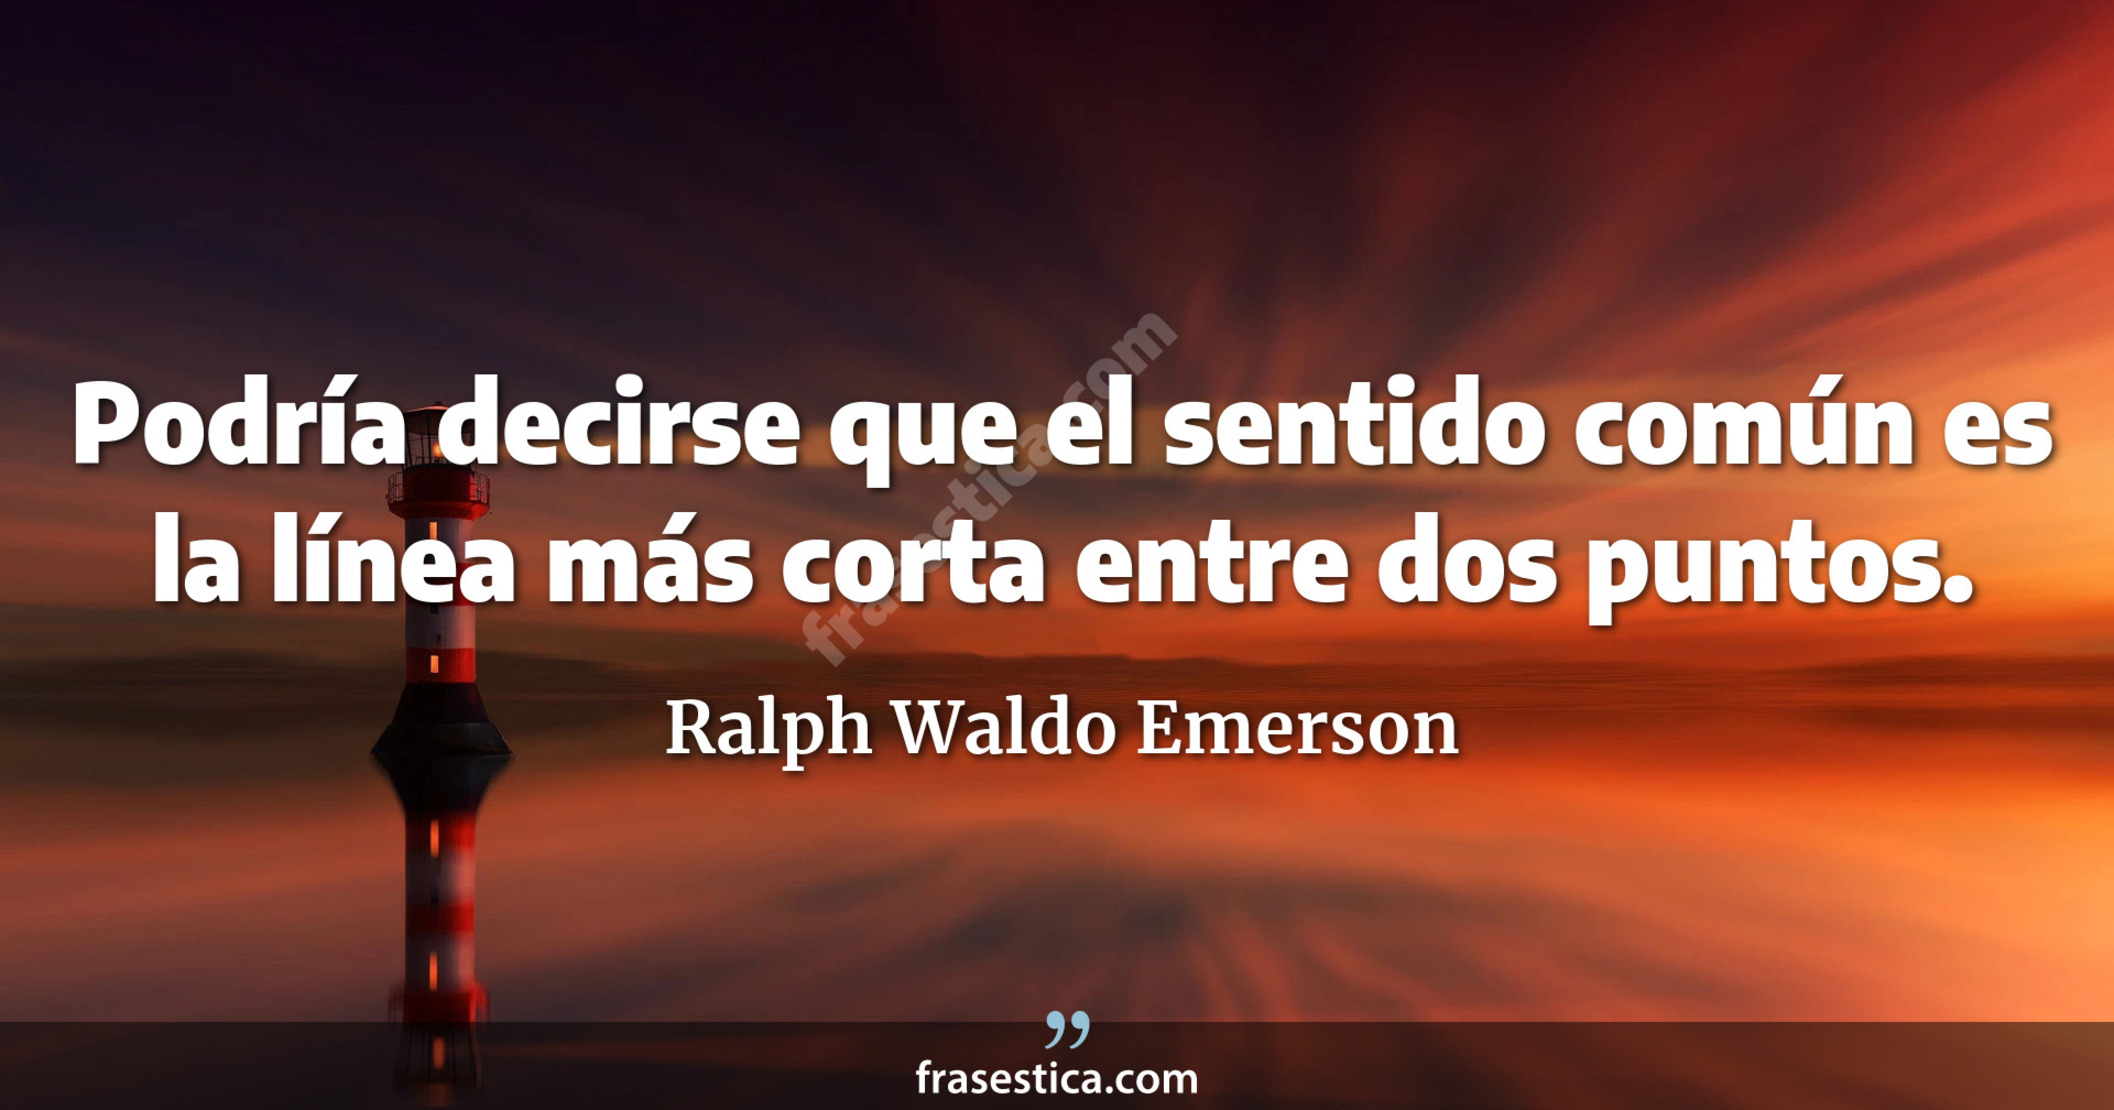 Podría decirse que el sentido común es la línea más corta entre dos puntos. - Ralph Waldo Emerson